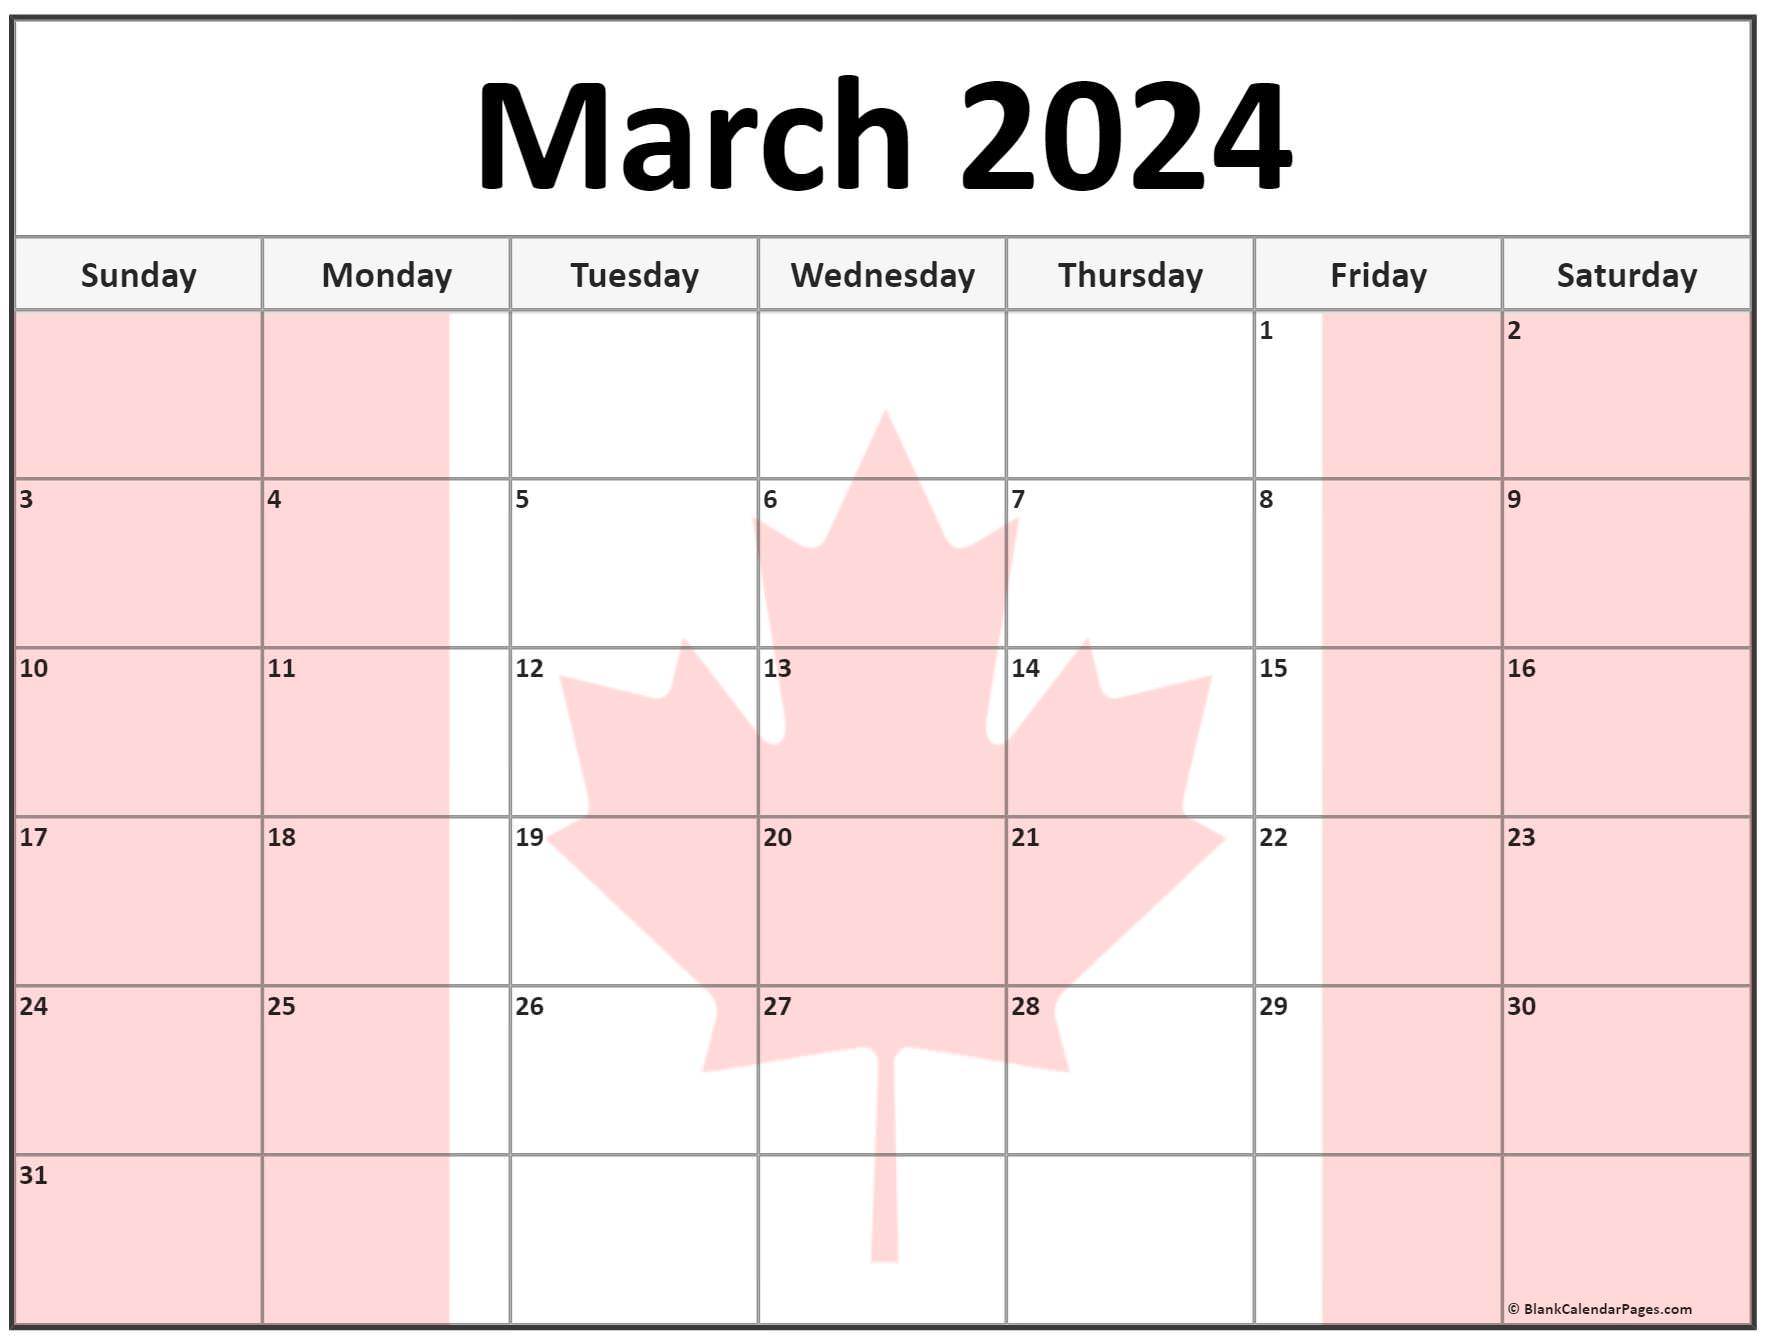 Easter Day 2024 Calendar Canada Pauly Betteann